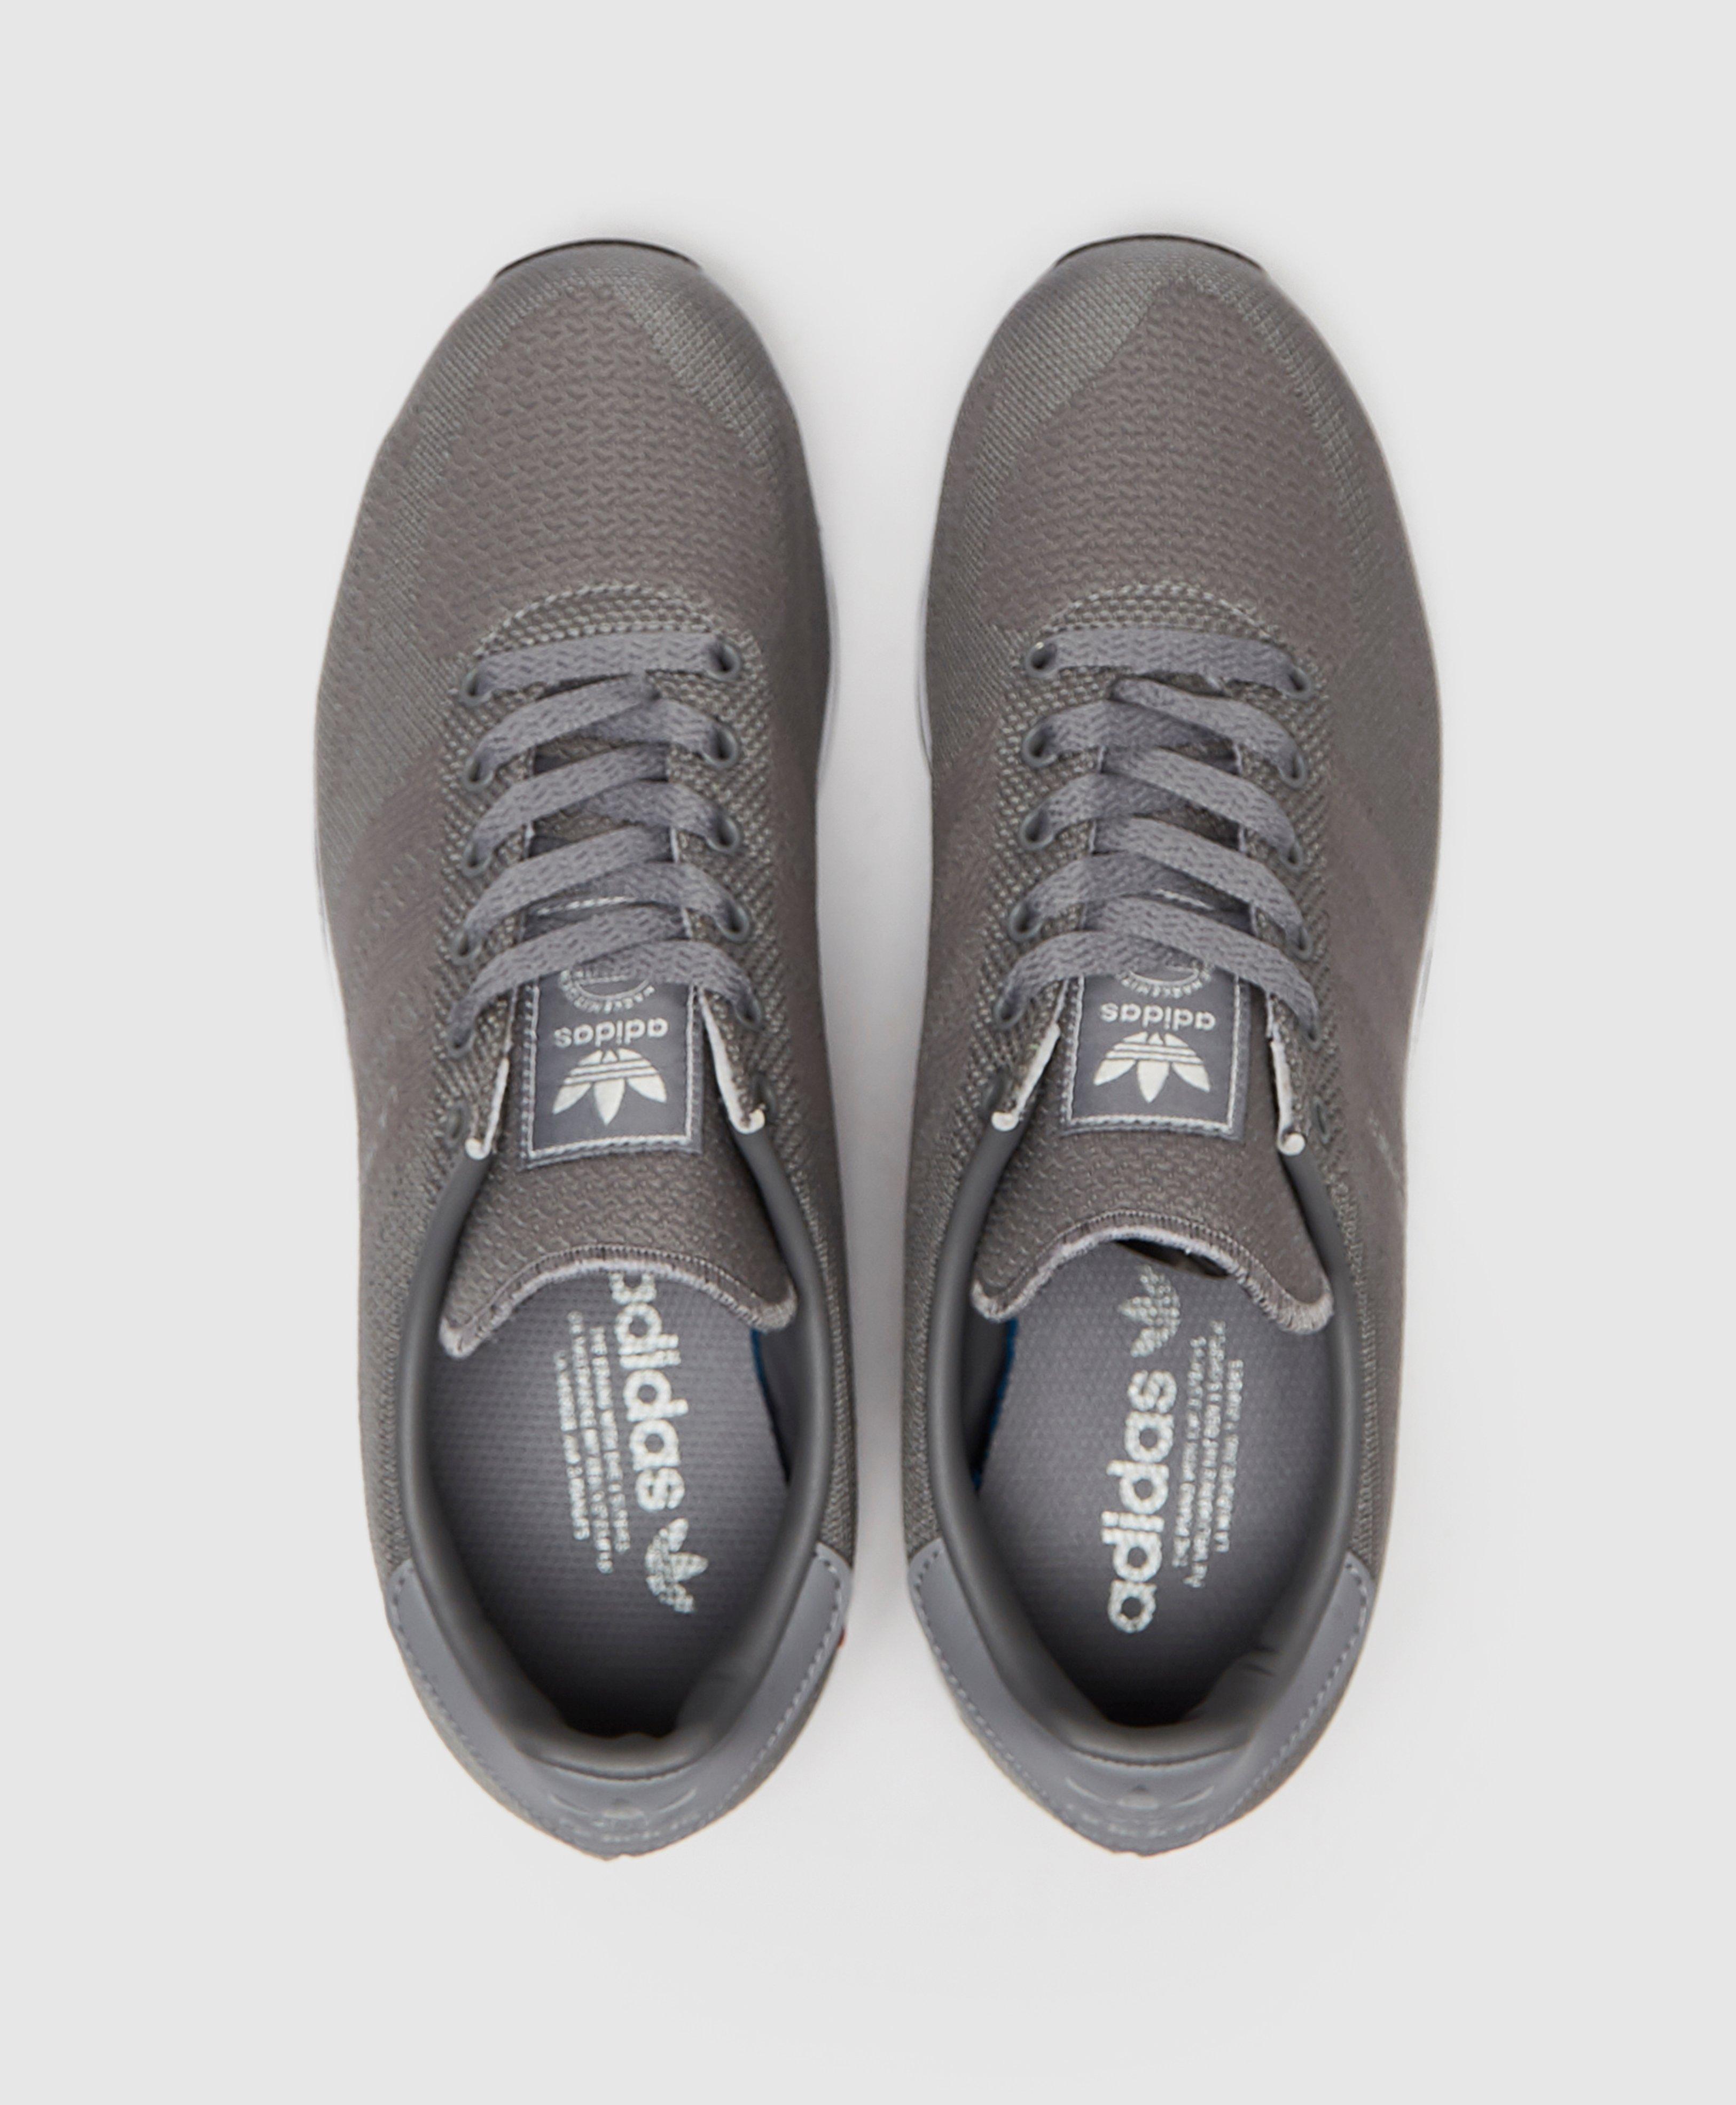 adidas originals la trainer woven grey